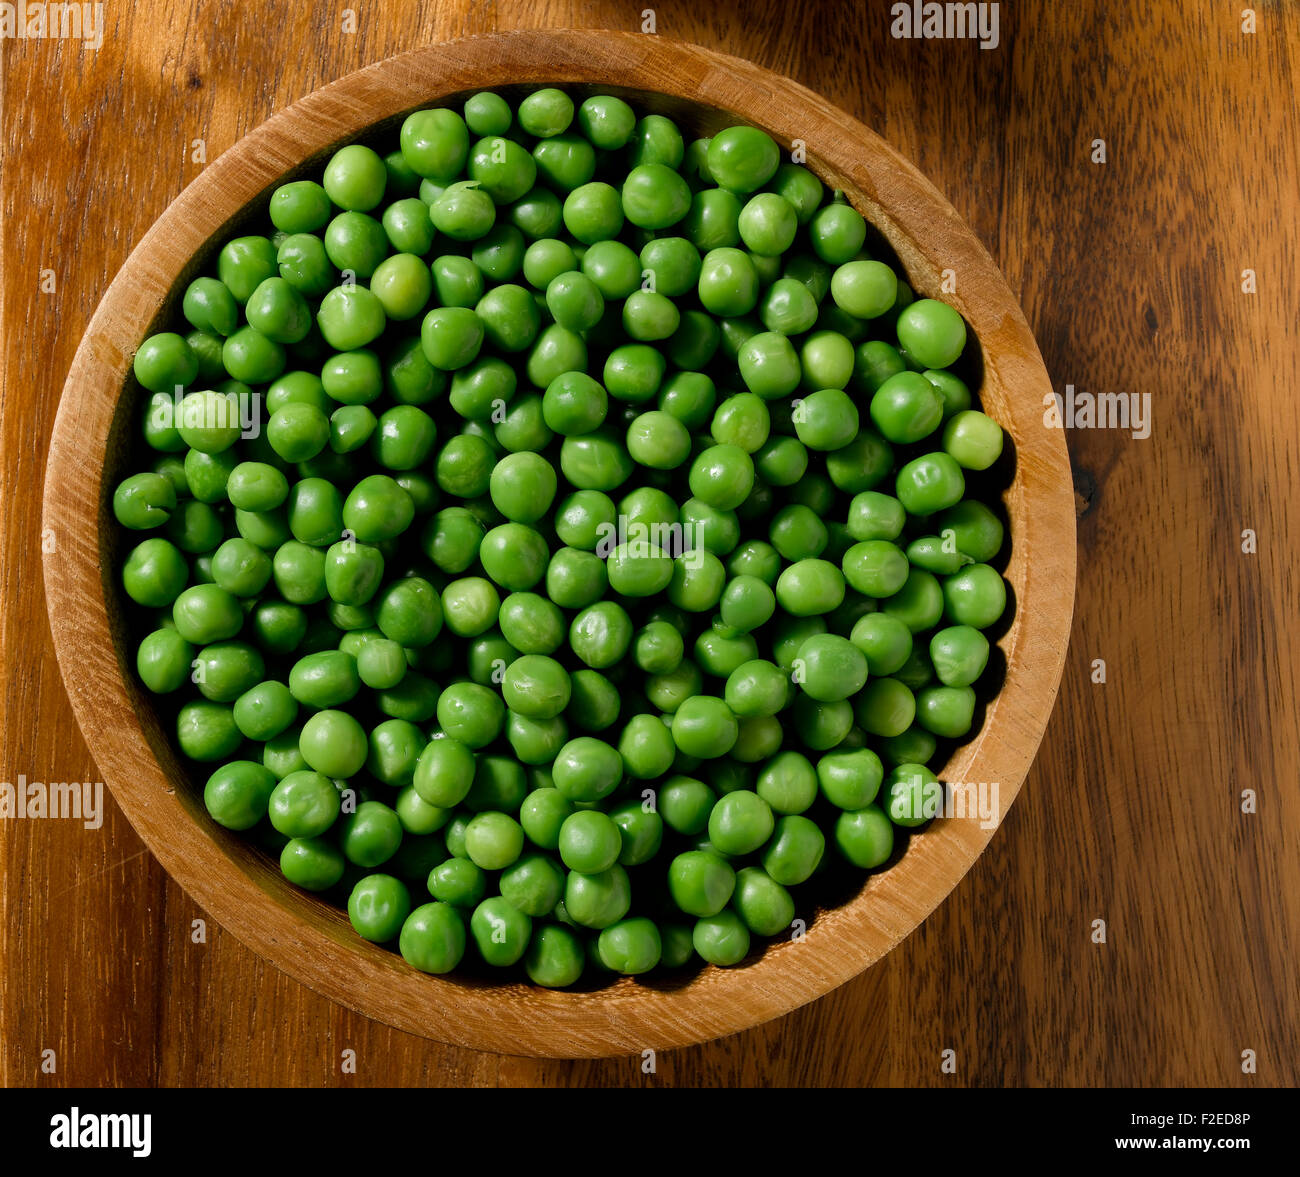 Bowl of garden pea's Stock Photo